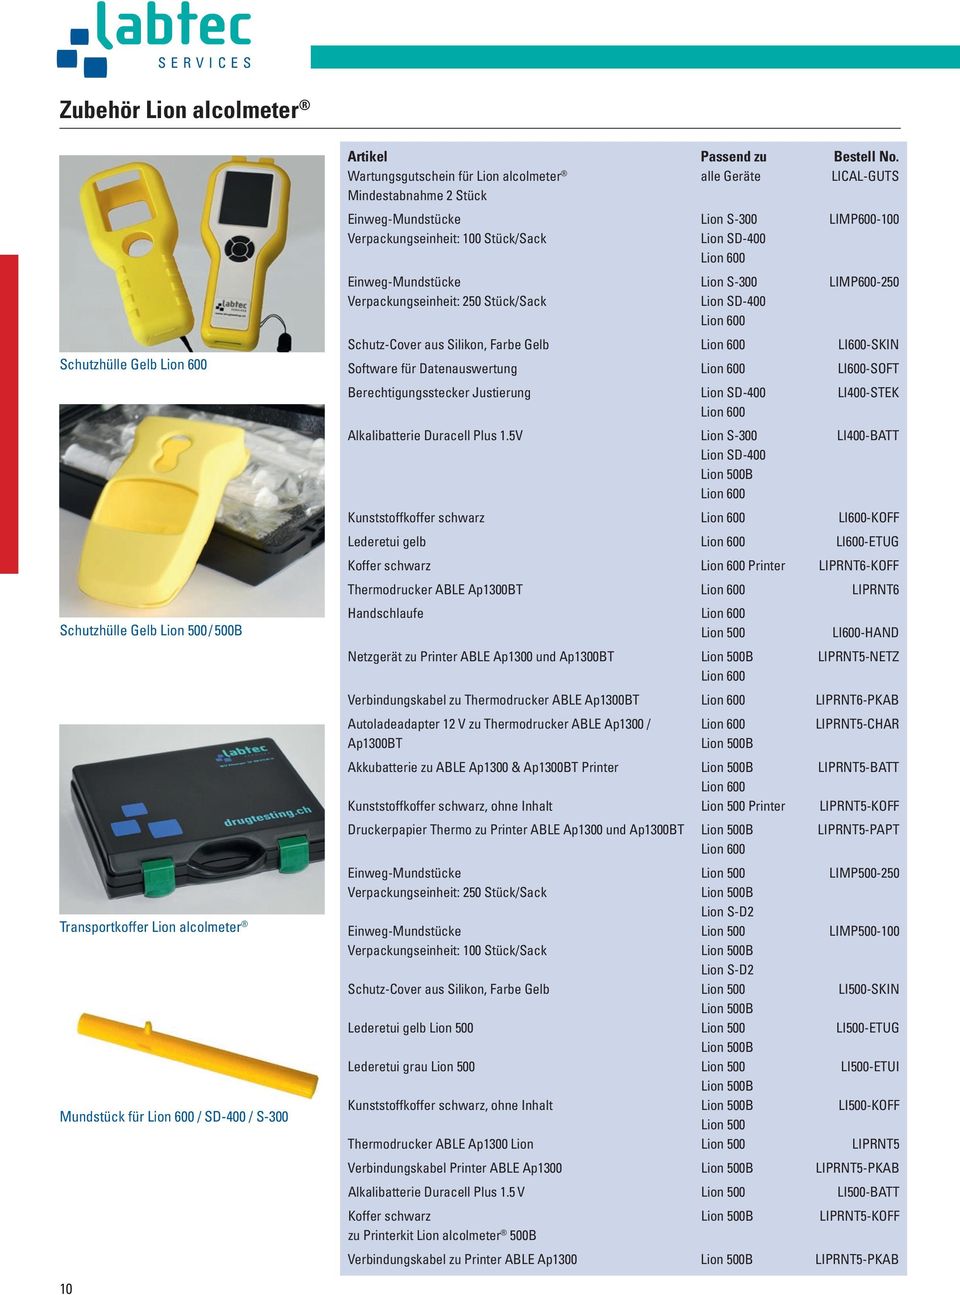 Einweg-Mundstücke Lion S-300 LIMP600-250 Verpackungseinheit: 250 Stück/Sack Lion SD-400 Lion 600 Schutz-Cover aus Silikon, Farbe Gelb Lion 600 LI600-SKIN Software für Datenauswertung Lion 600